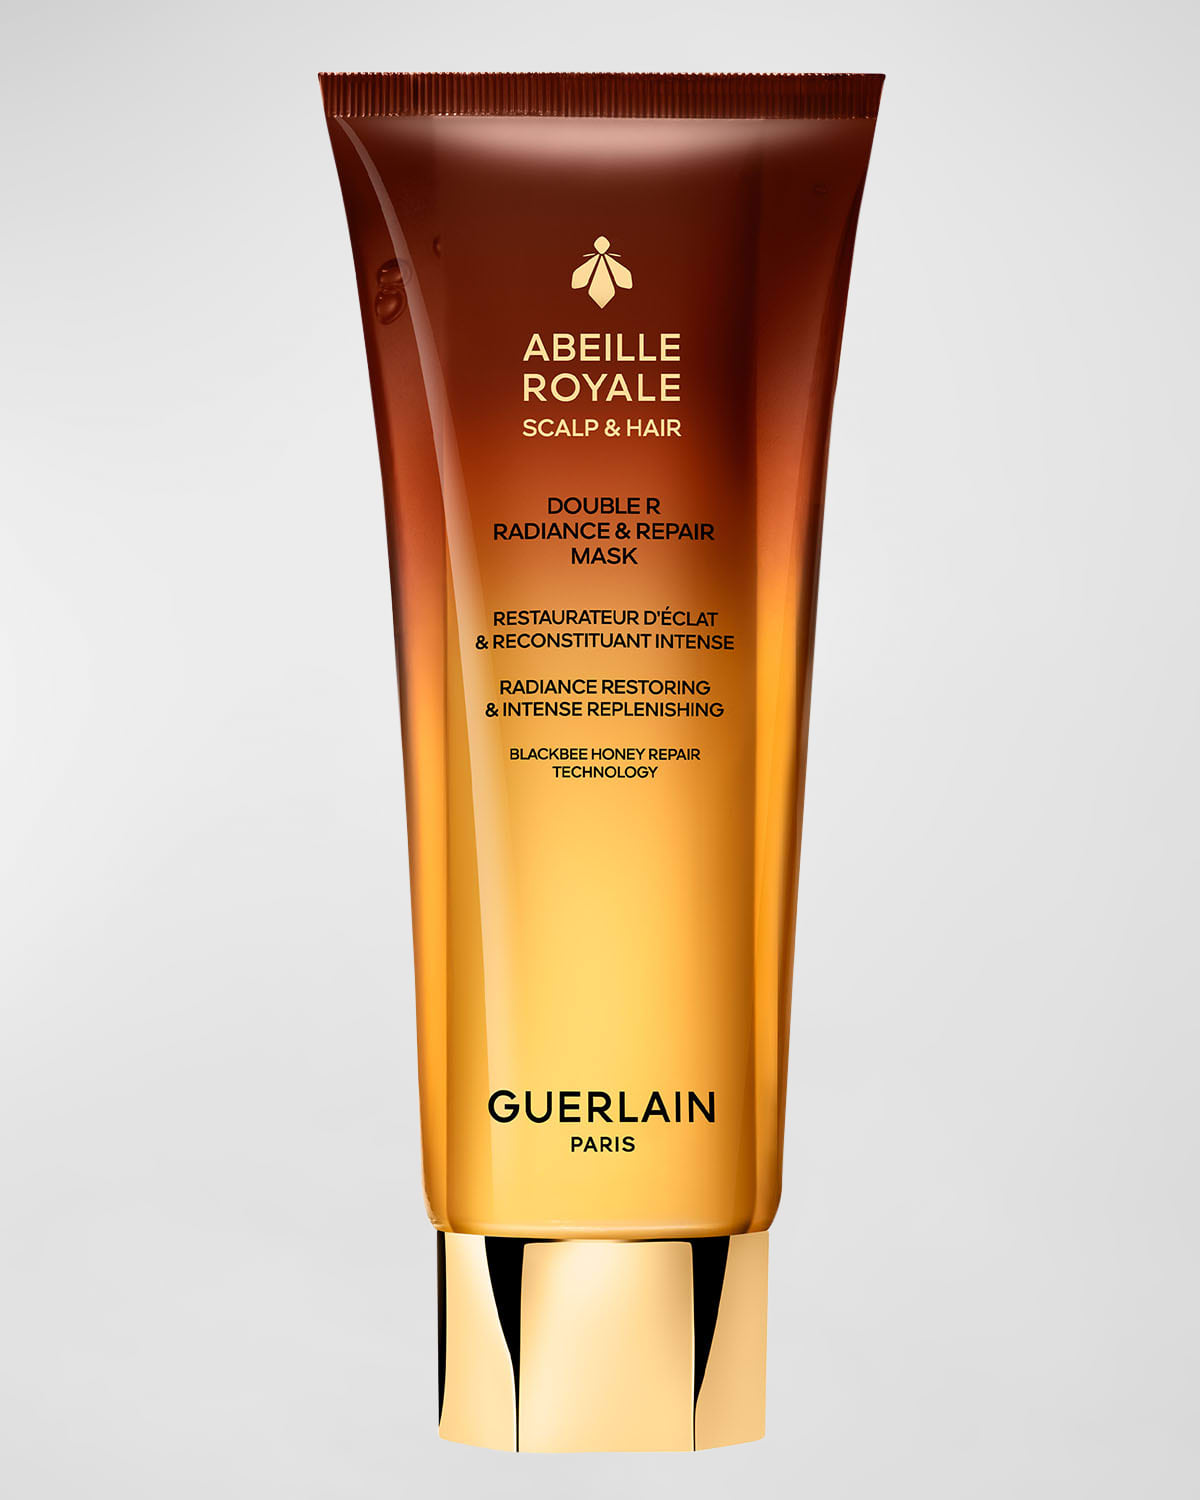 GUERLAIN Abeille Royal Double R Radiance & Repair Mask, 6.7 oz.